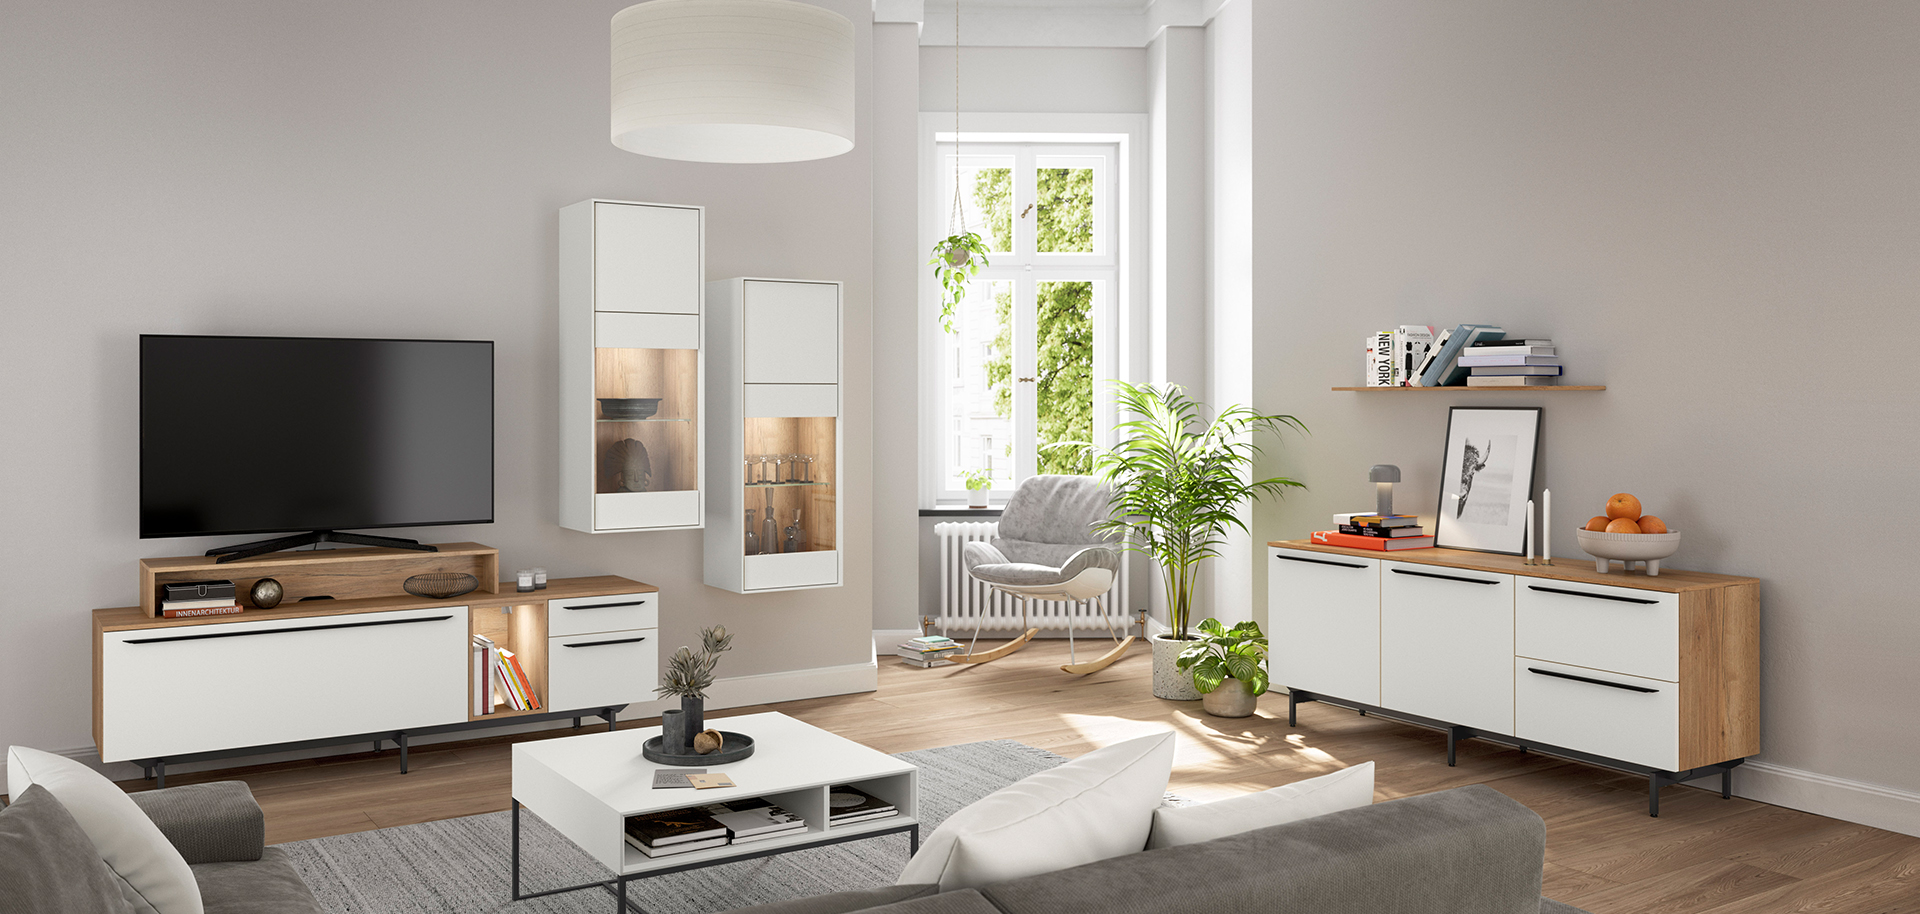 Současný obývací pokoj s elegantním nábytkem, zelenými rostlinami a přírodním světlem, vyzařující klidnou a moderní atmosféru.